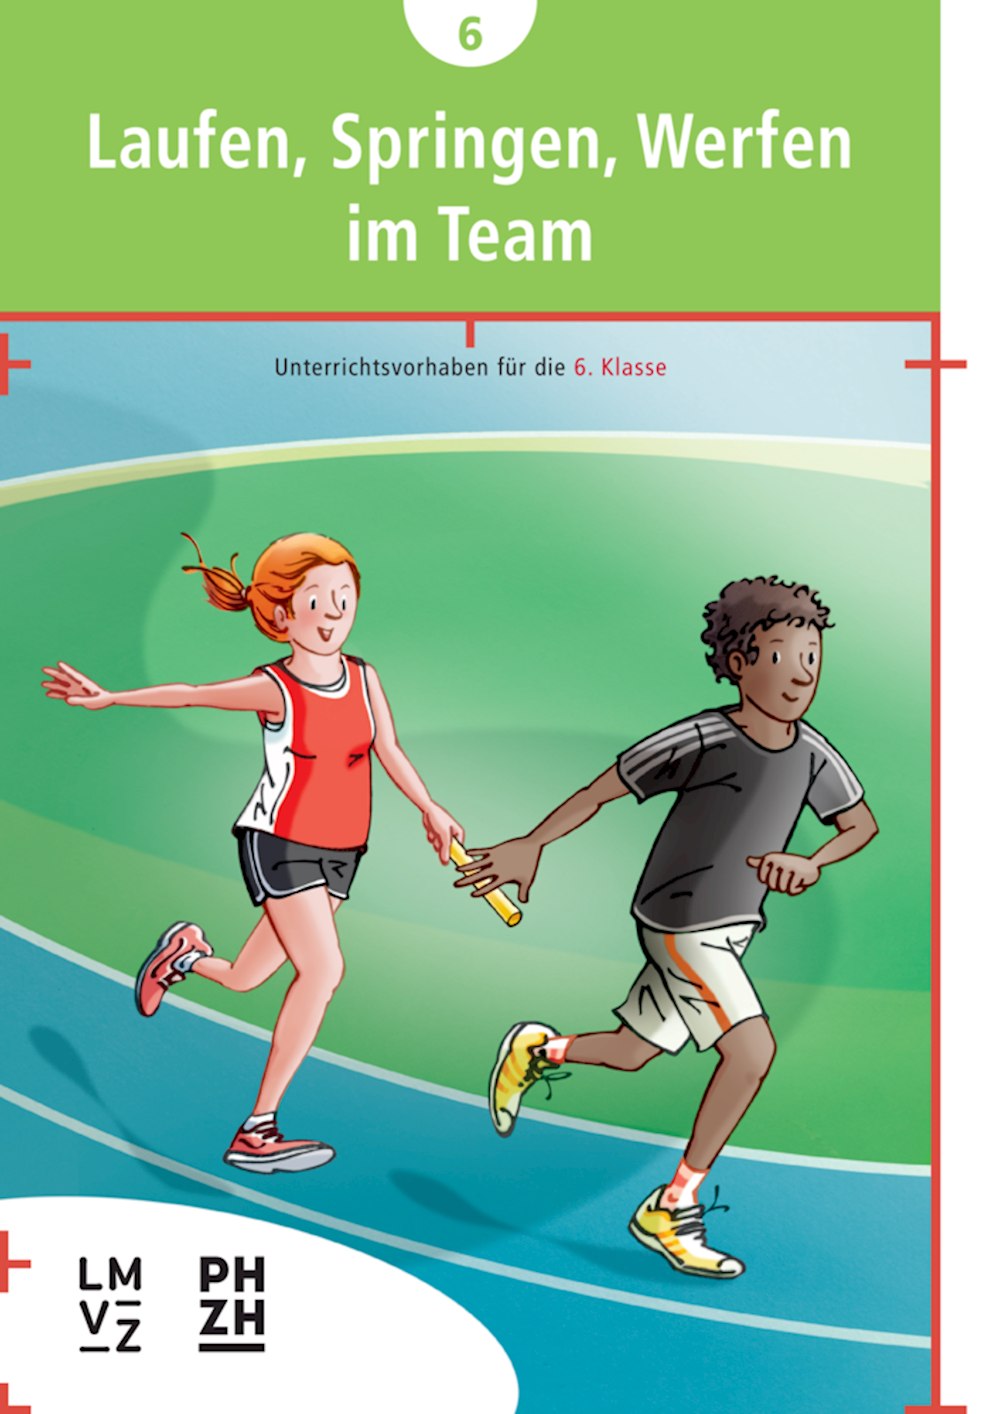 Laufen-Springen-Werfen im Team Broschüre Leichtathletik mit 4 Kompetenzen